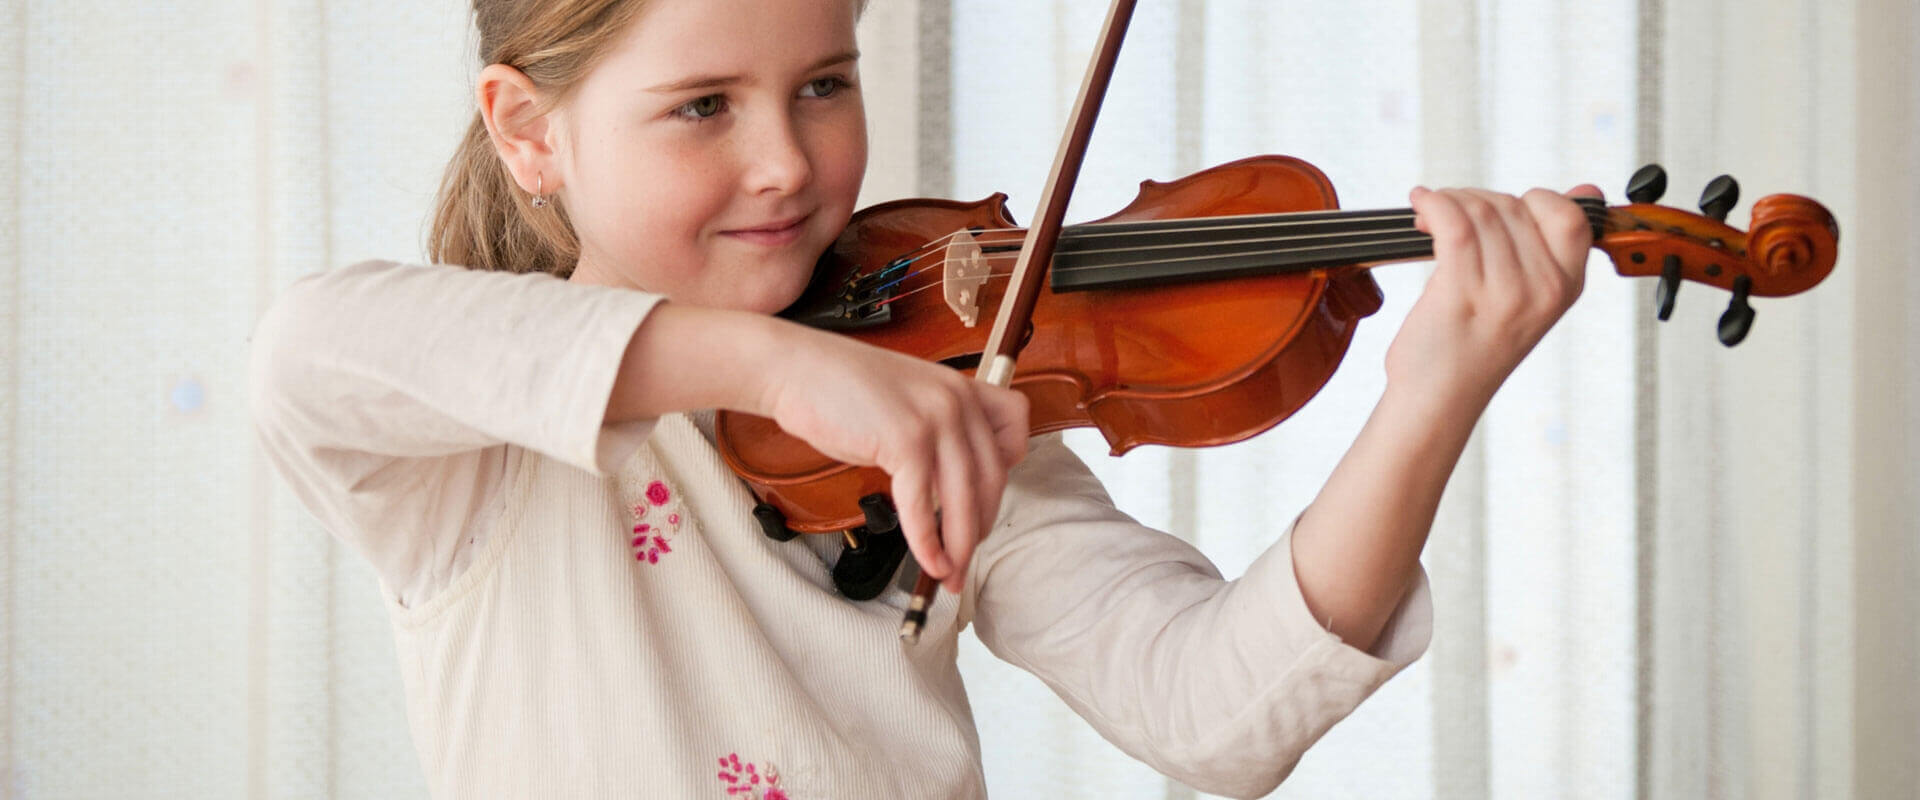 Violin Lessons Chino, CA